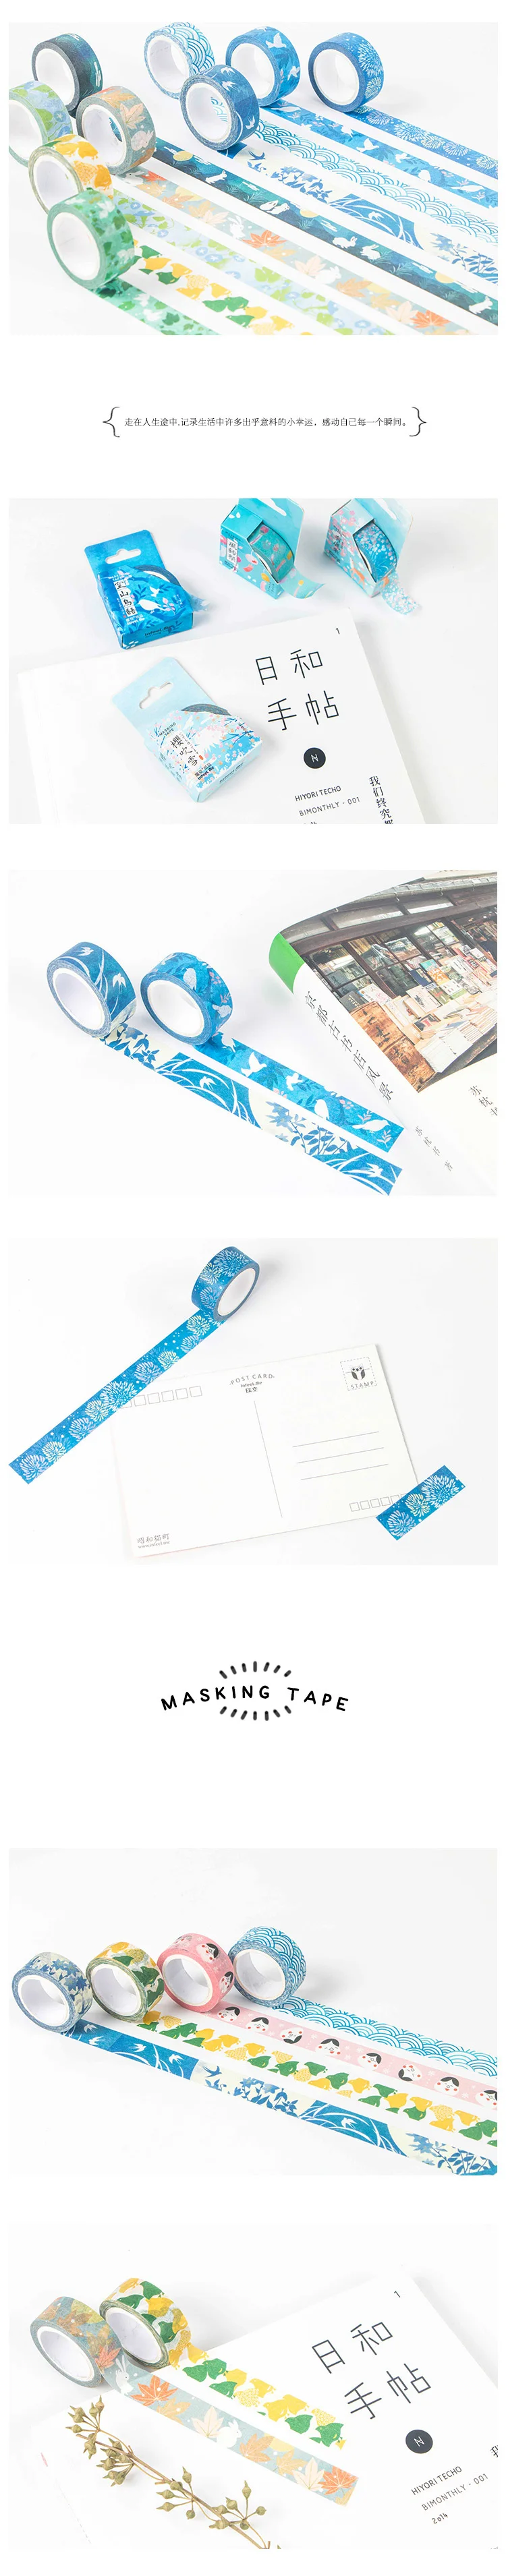 Японский стиль васи лента клейкая лента DIY Скрапбукинг Стикеры фотоальбом этикетка лента клейкая лента 15 мм * 7 м kyoto украшения